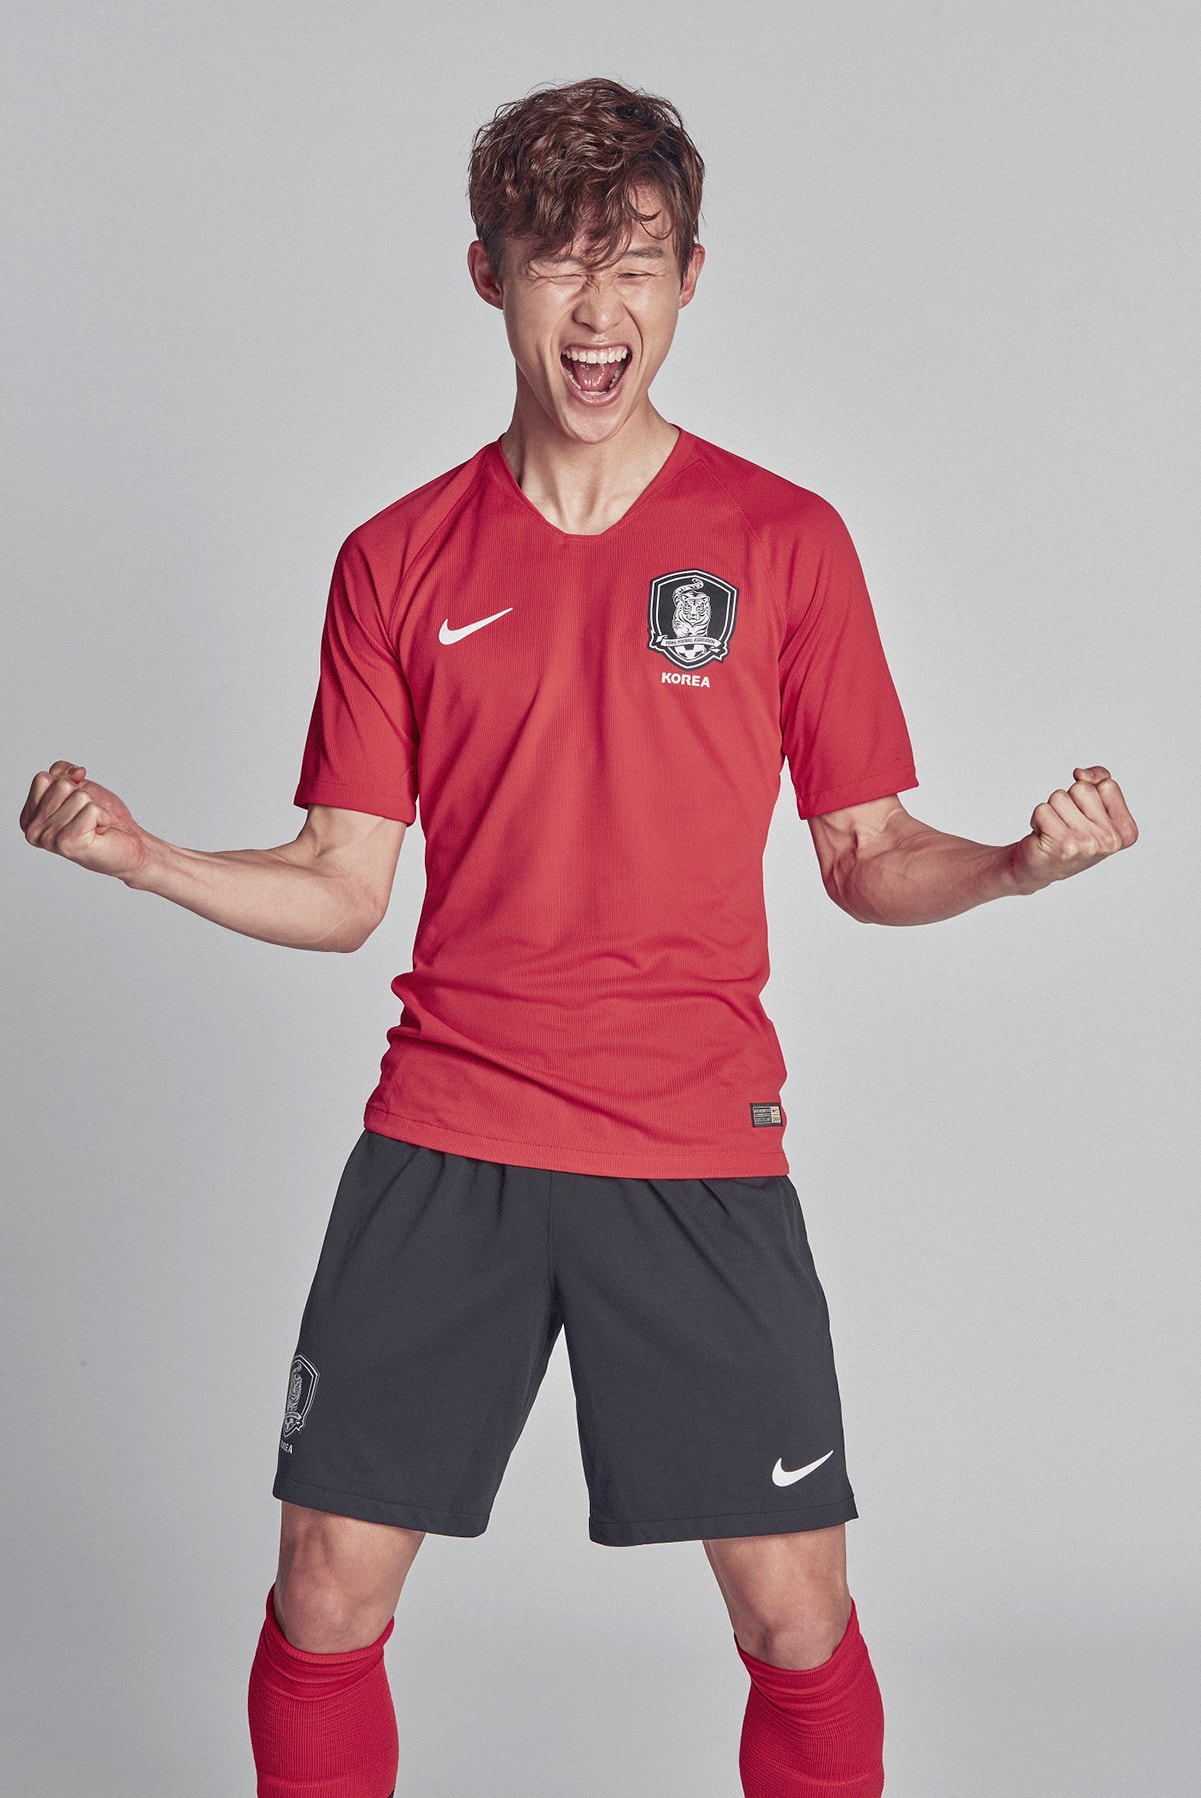 2018 러시아 월드컵 한국 축구 유니폼 국가대표 나이키 대한민국 축구대표팀 컬렉션 2018 russia world cup korea football team uniform nike collection